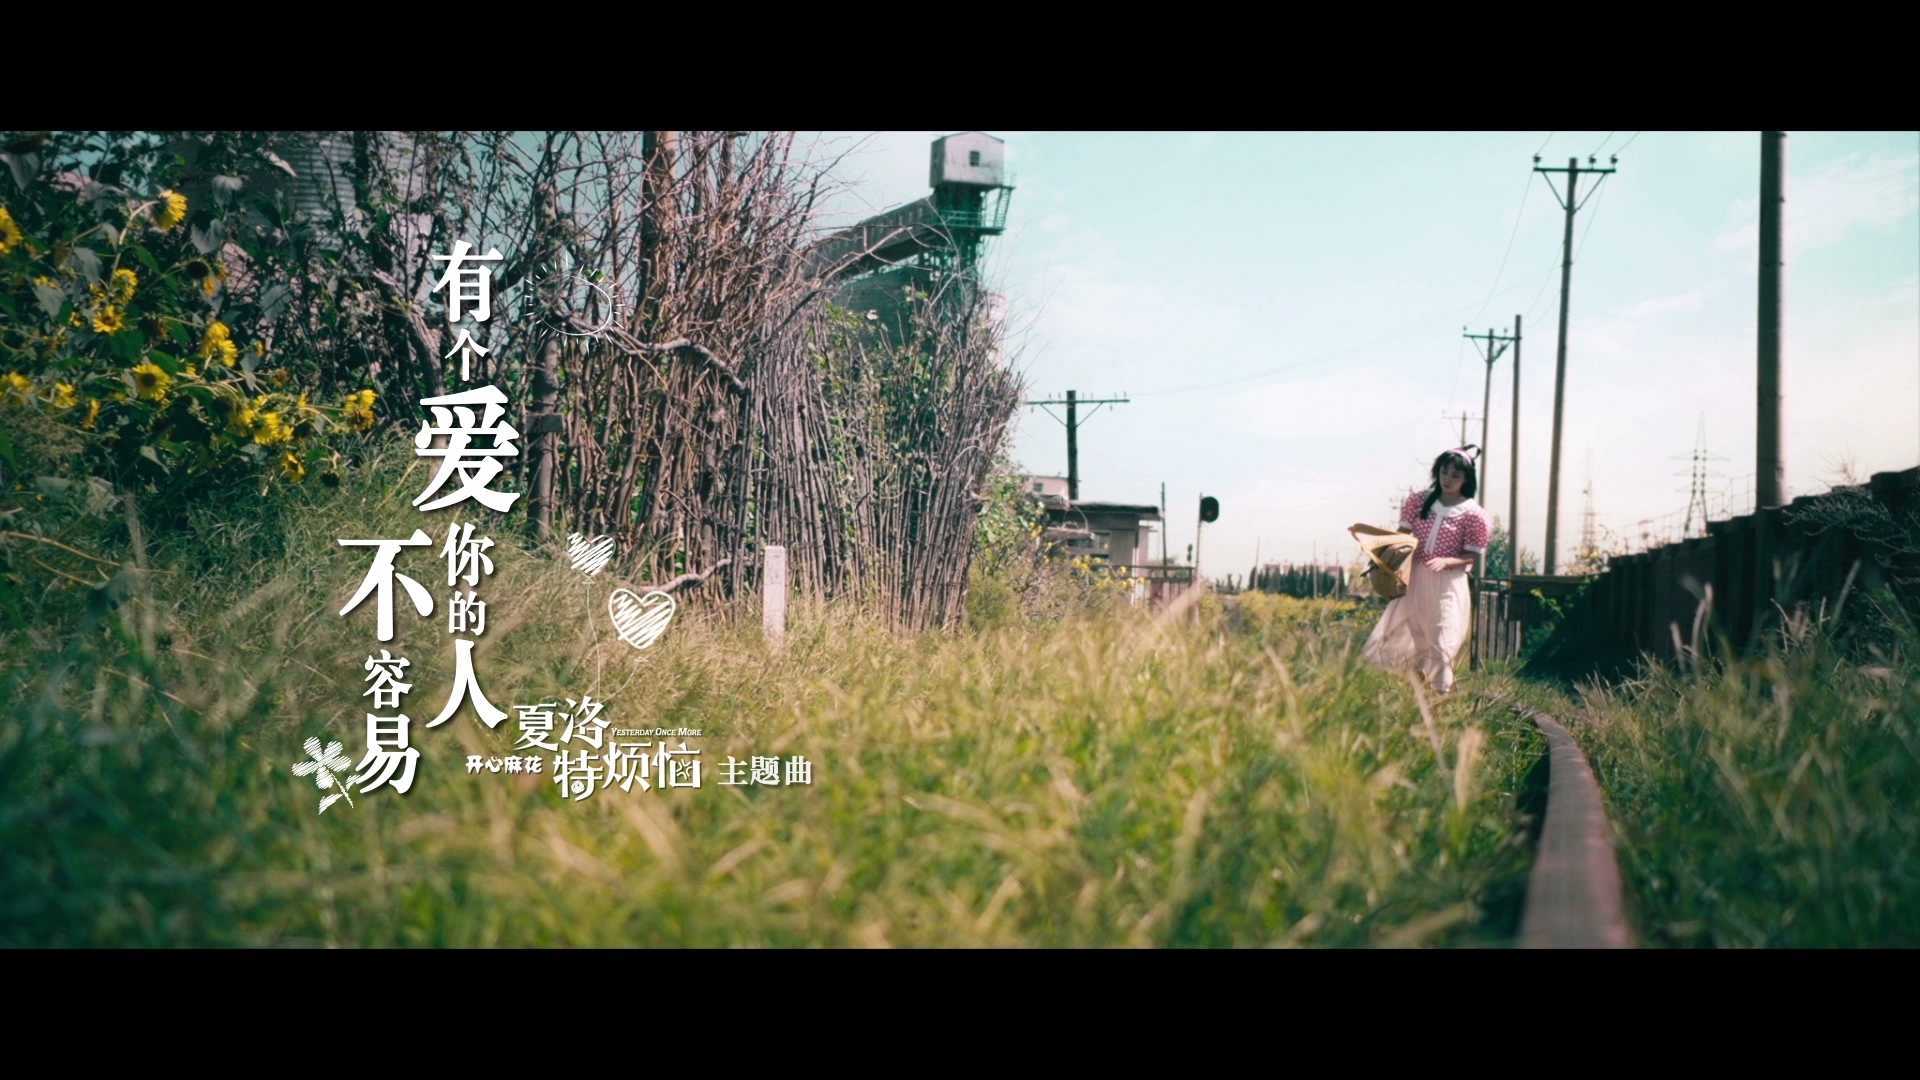 歌曲《有个爱你的人不容易》MV  电影《夏洛特烦恼》主题曲